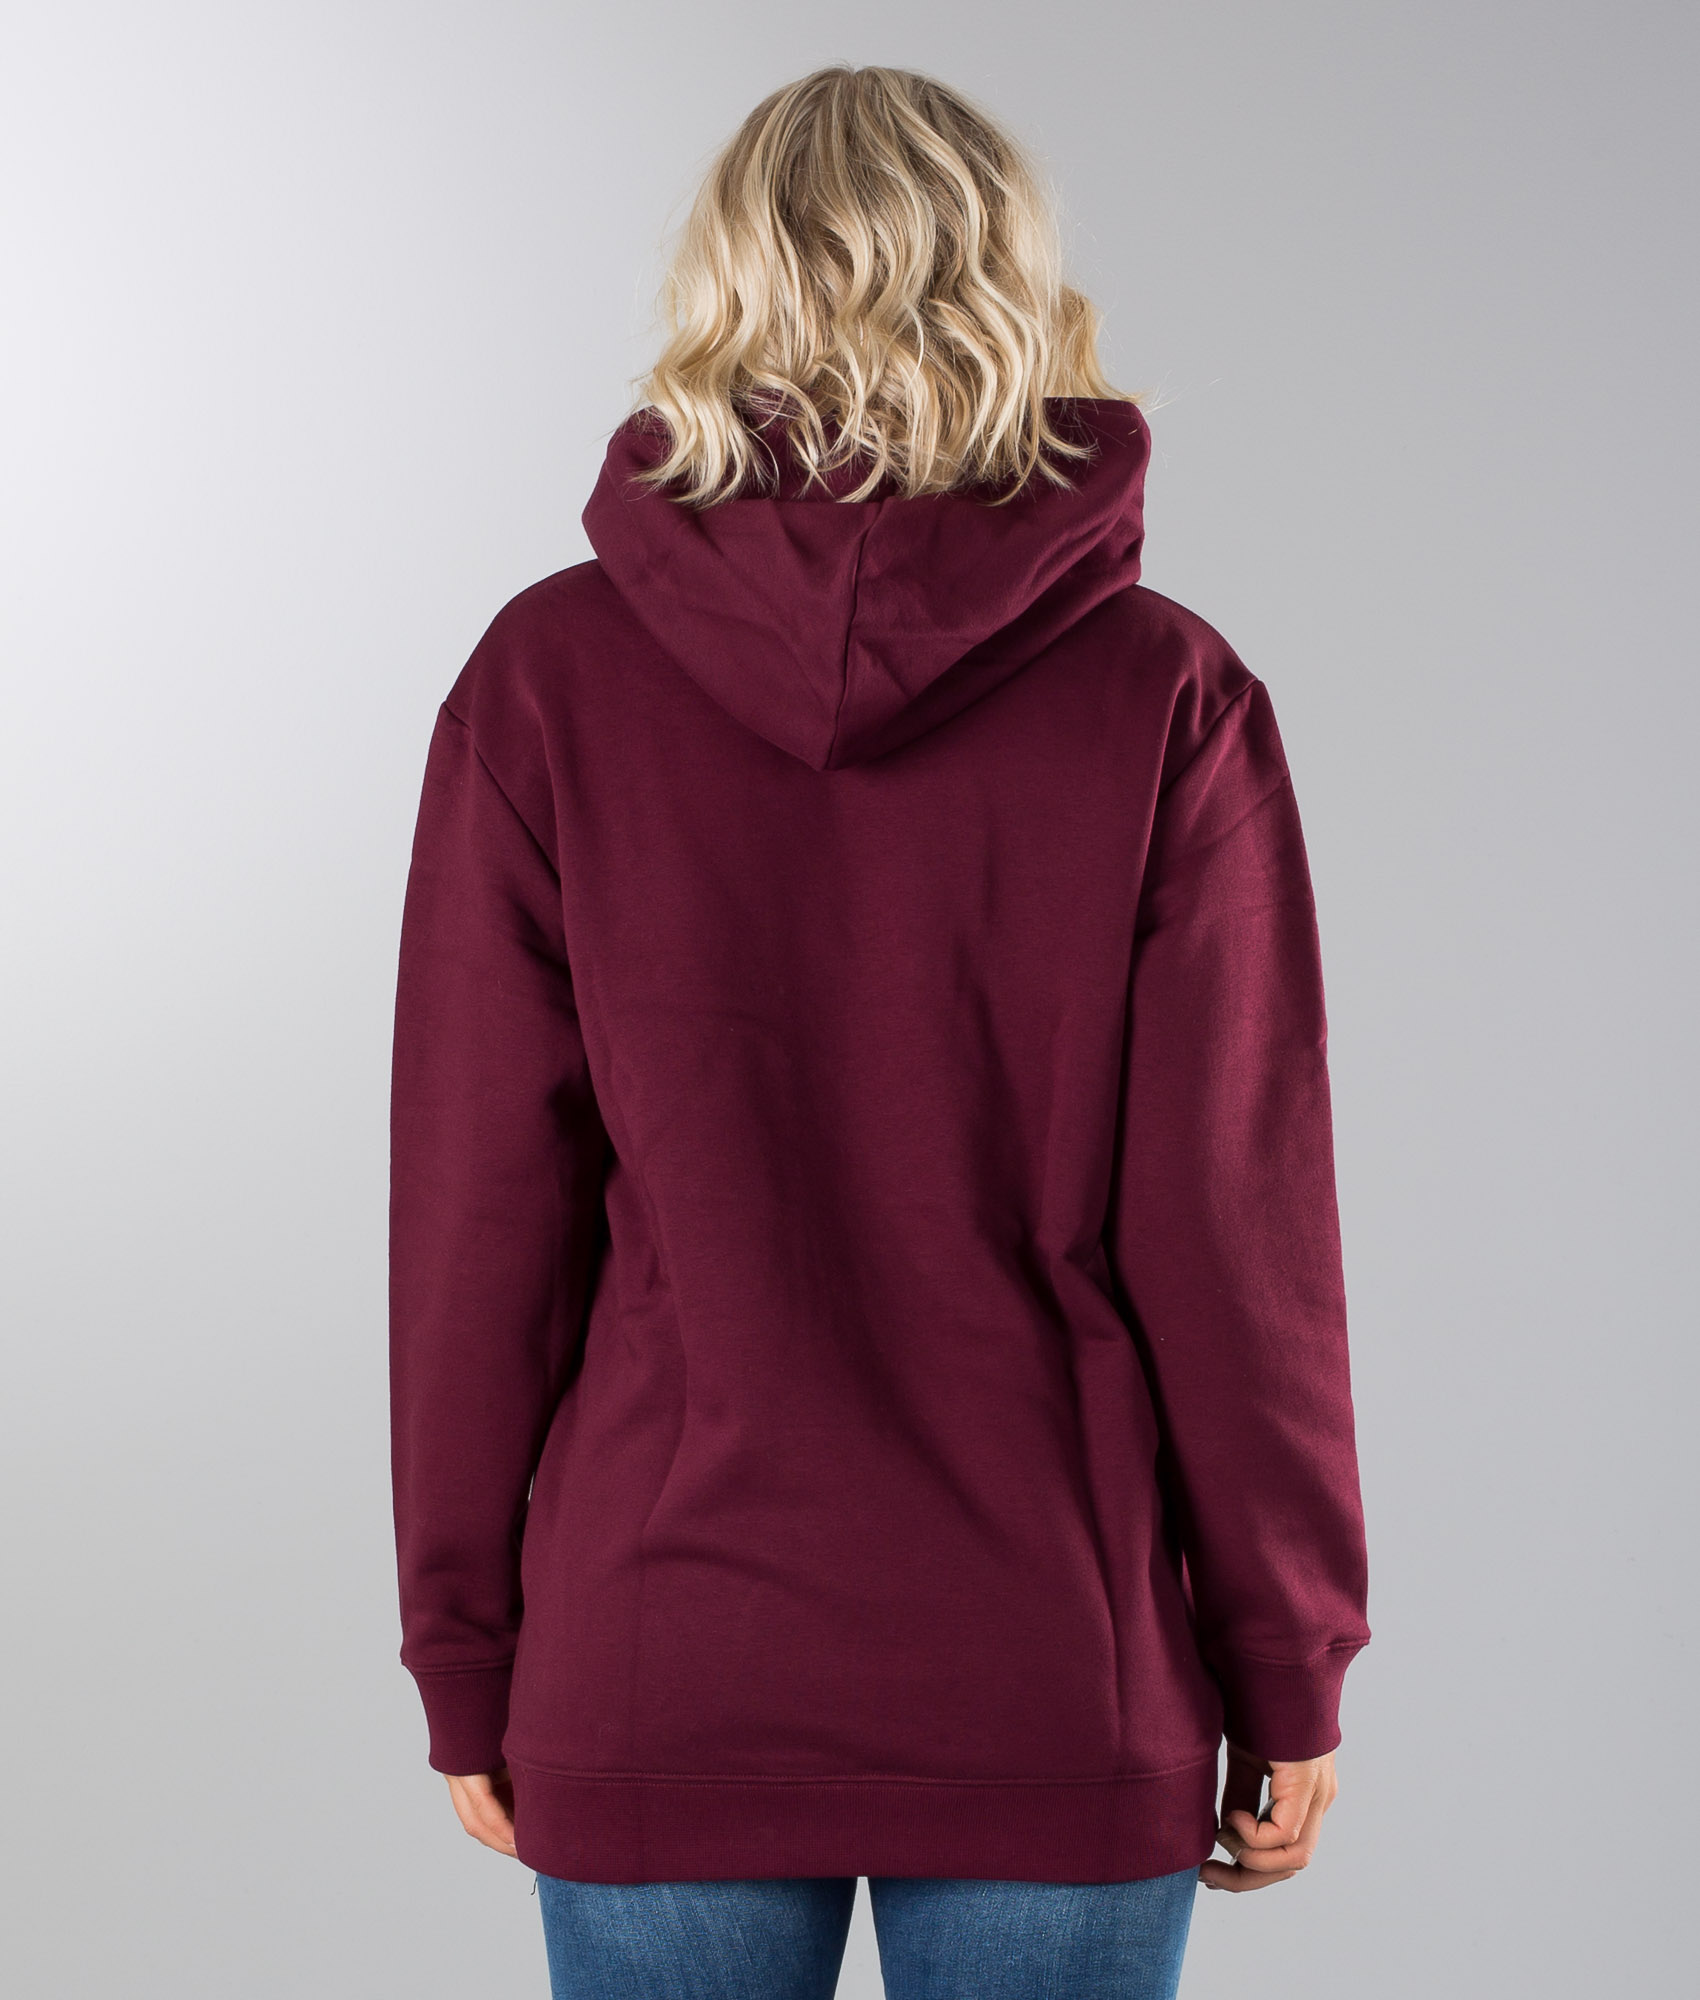 maroon trefoil hoodie